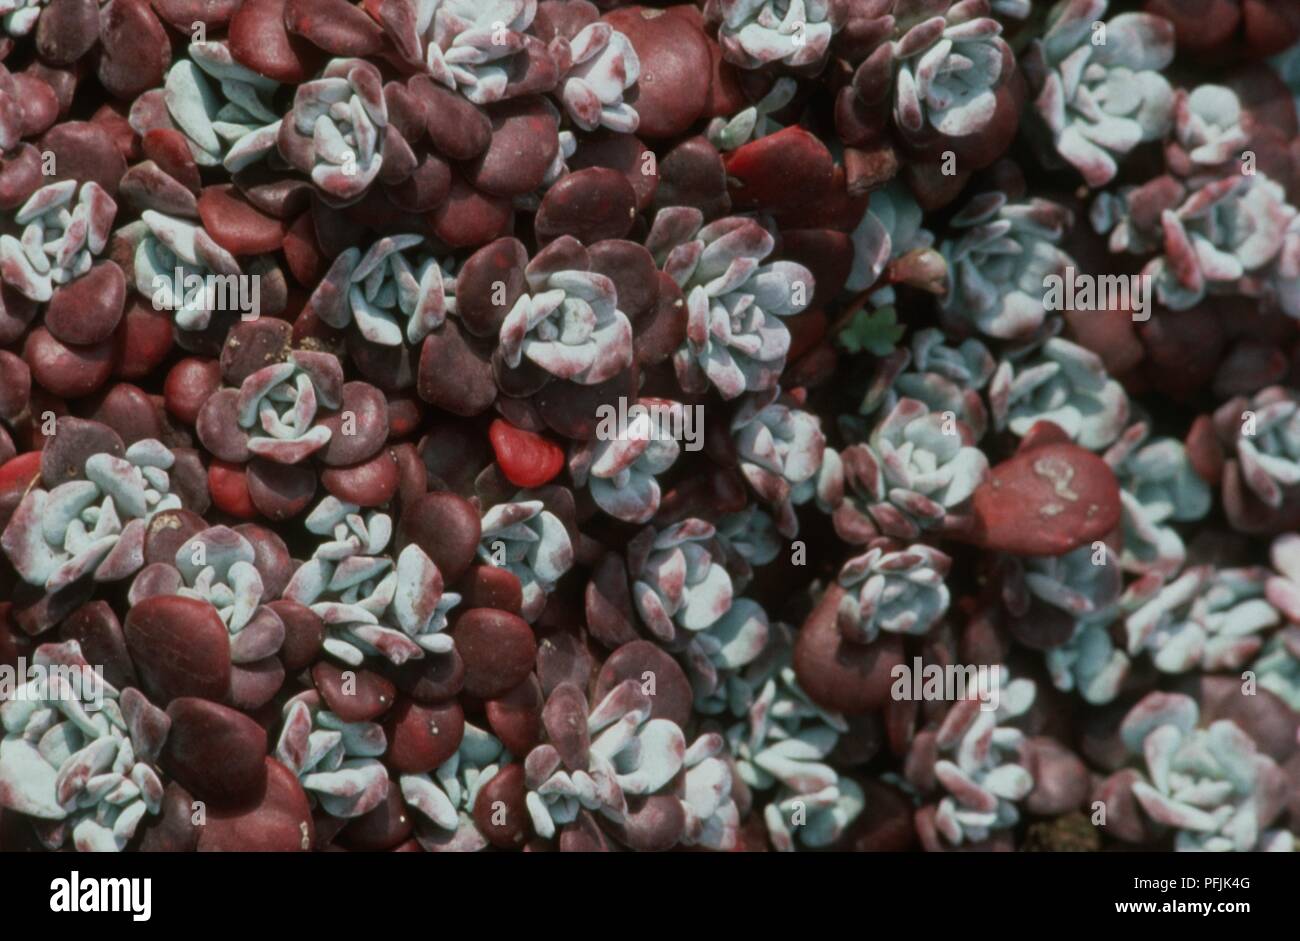 Red and pale grey rosette leaves of Sedum spathulifolium 'Purpureum' (Stone crop) Stock Photo